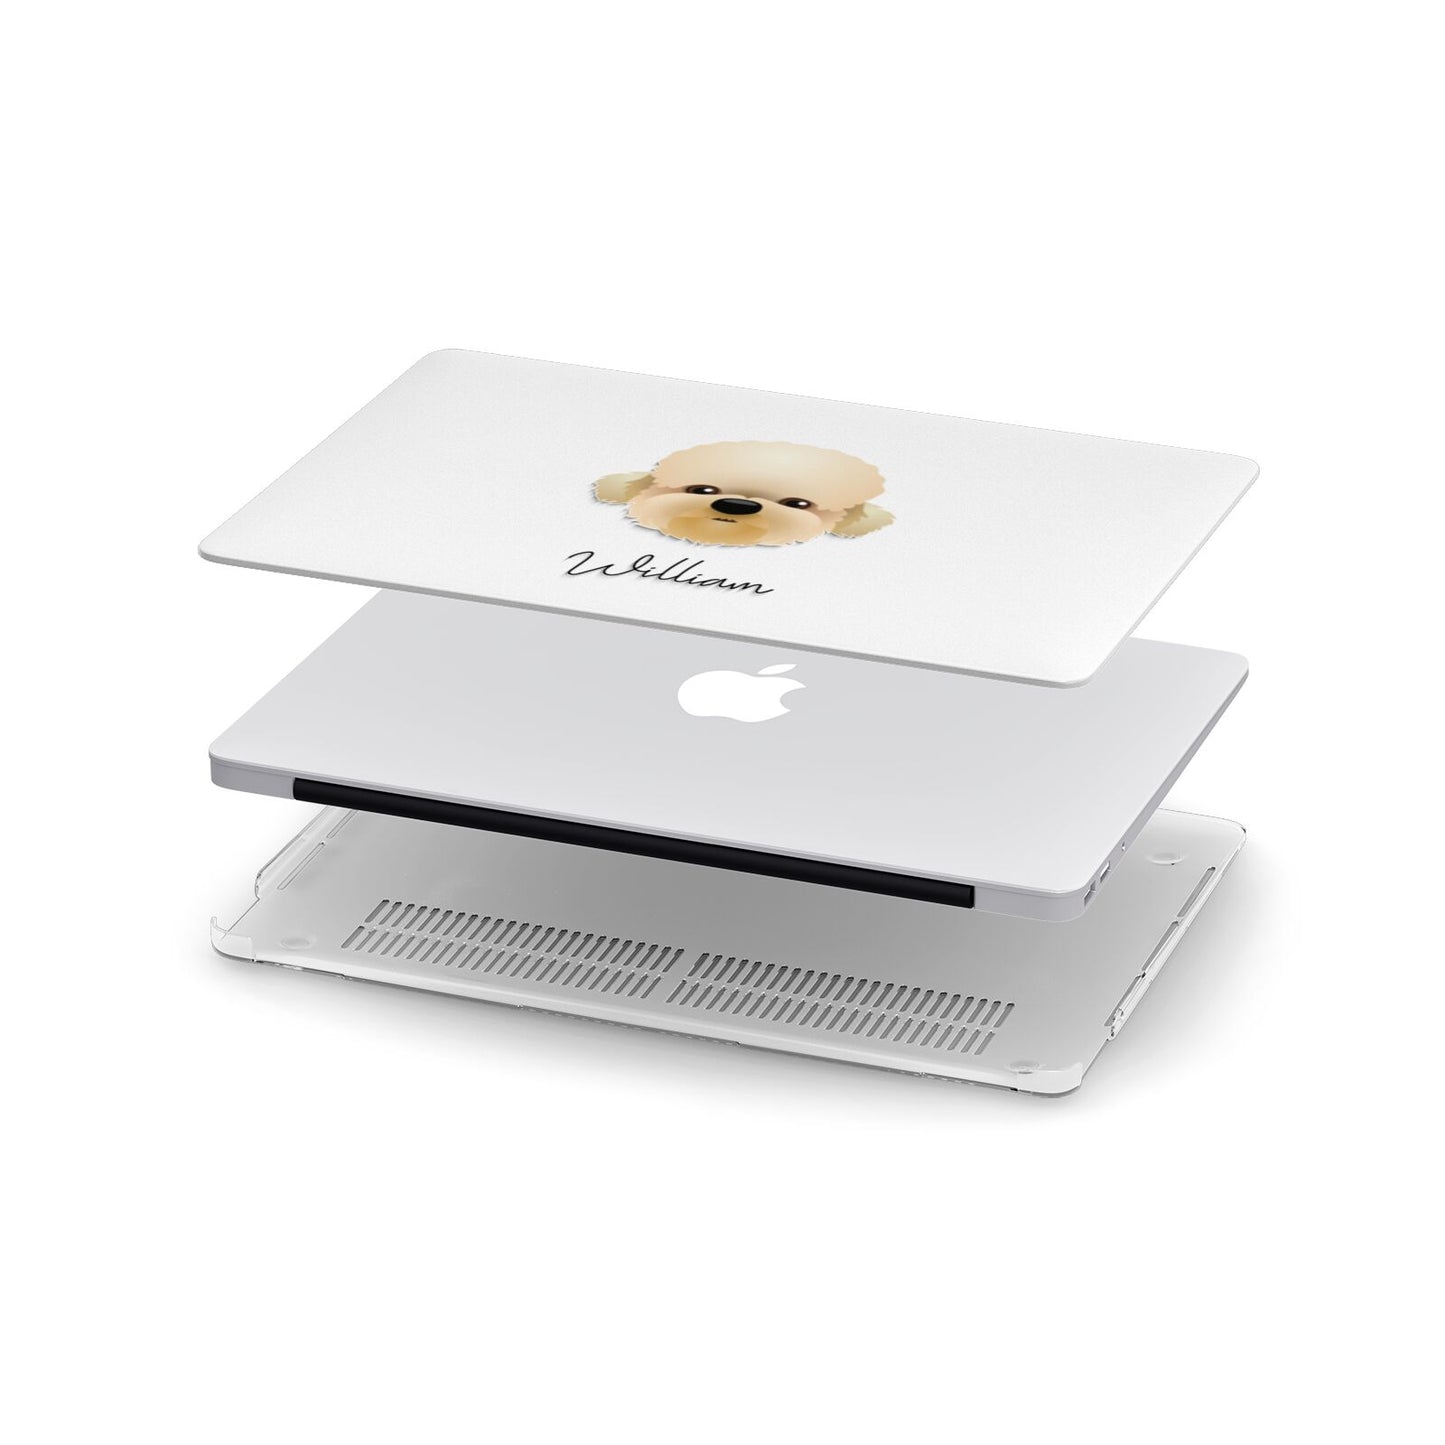 Dandie Dinmont Terrier Personalised Apple MacBook Case in Detail